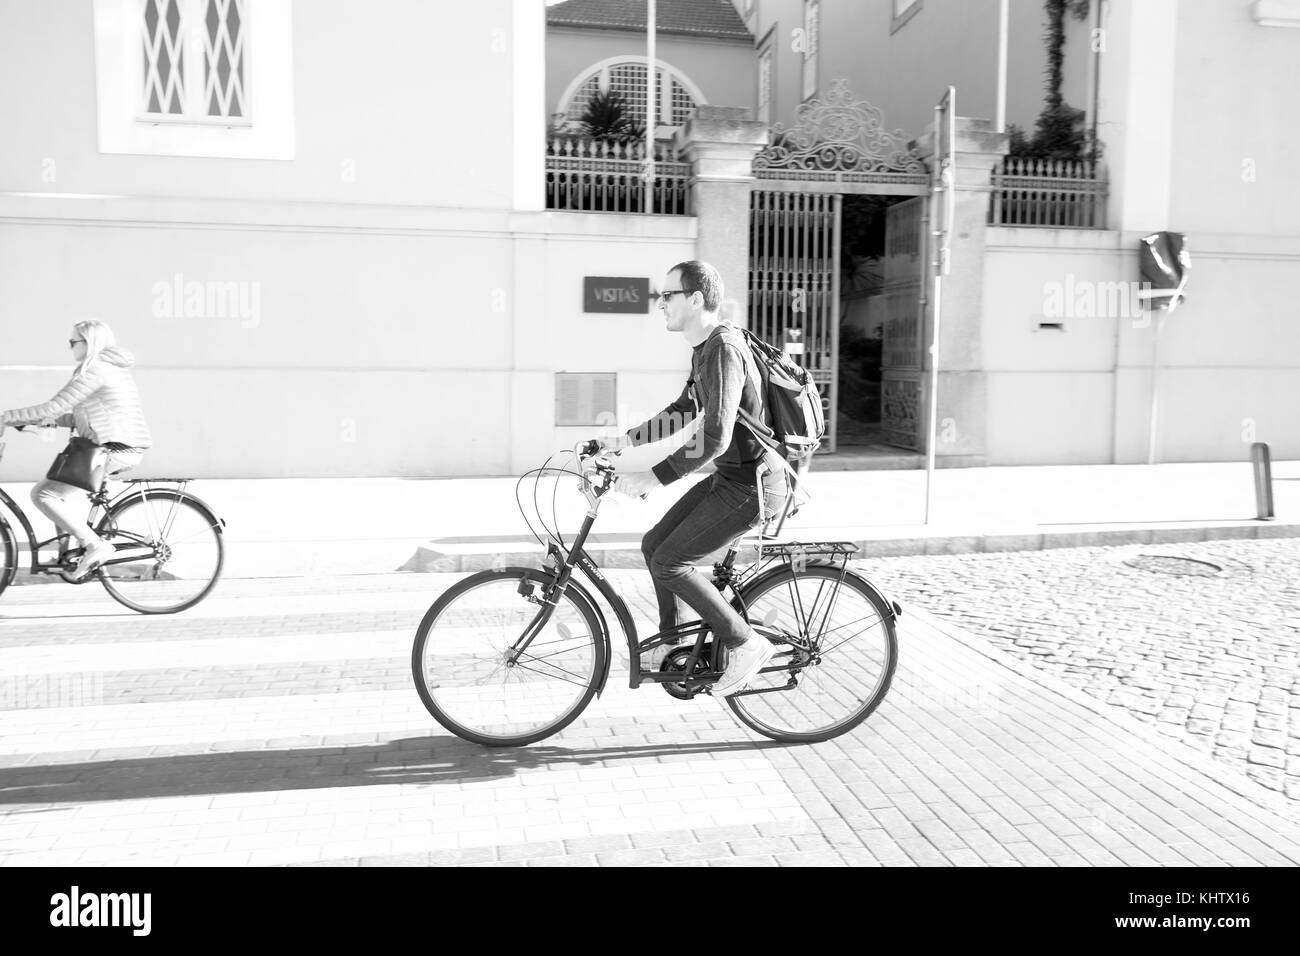 Septiembre 2017 - hombre montado en una bicicleta de alquiler de coches en Porto, Portugal. Foto de stock